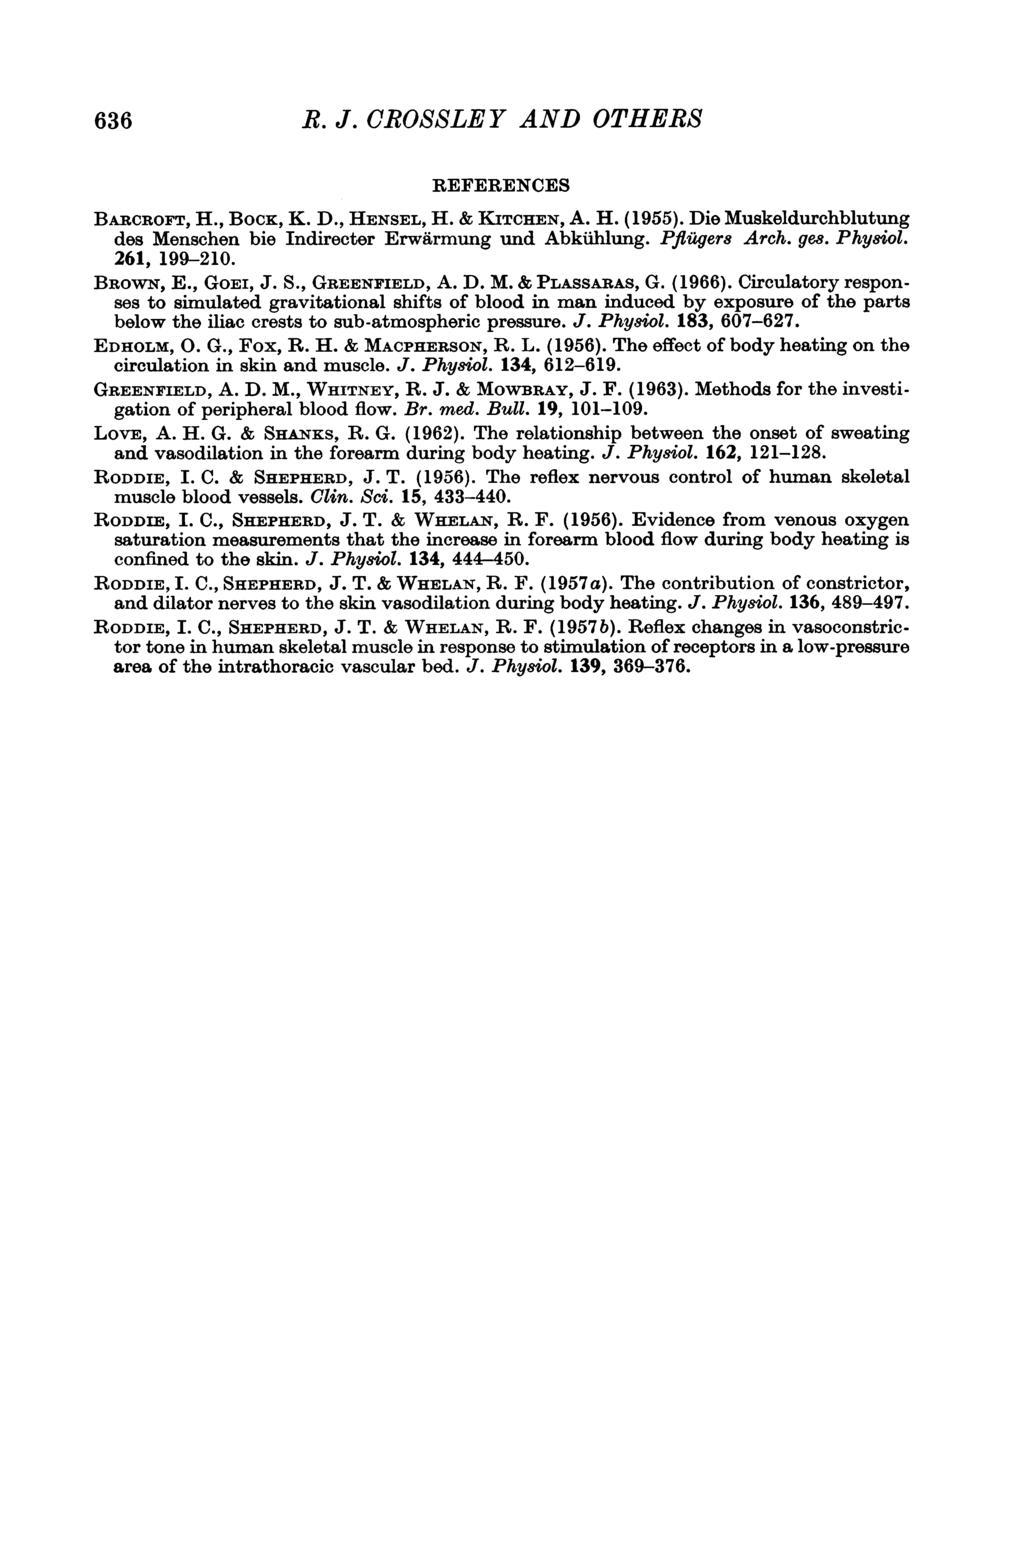 636 R. J. CROSSLEY AND OTHERS REFERENCES BARCROFT, H., BocK, K. D., HENSEL, H. & KITCHEN, A. H. (1955). Die Muskeldurchblutung des Menschen bie Indirecter Erwarmung und Abkiihlung. Pfluger8 Arch. ges.